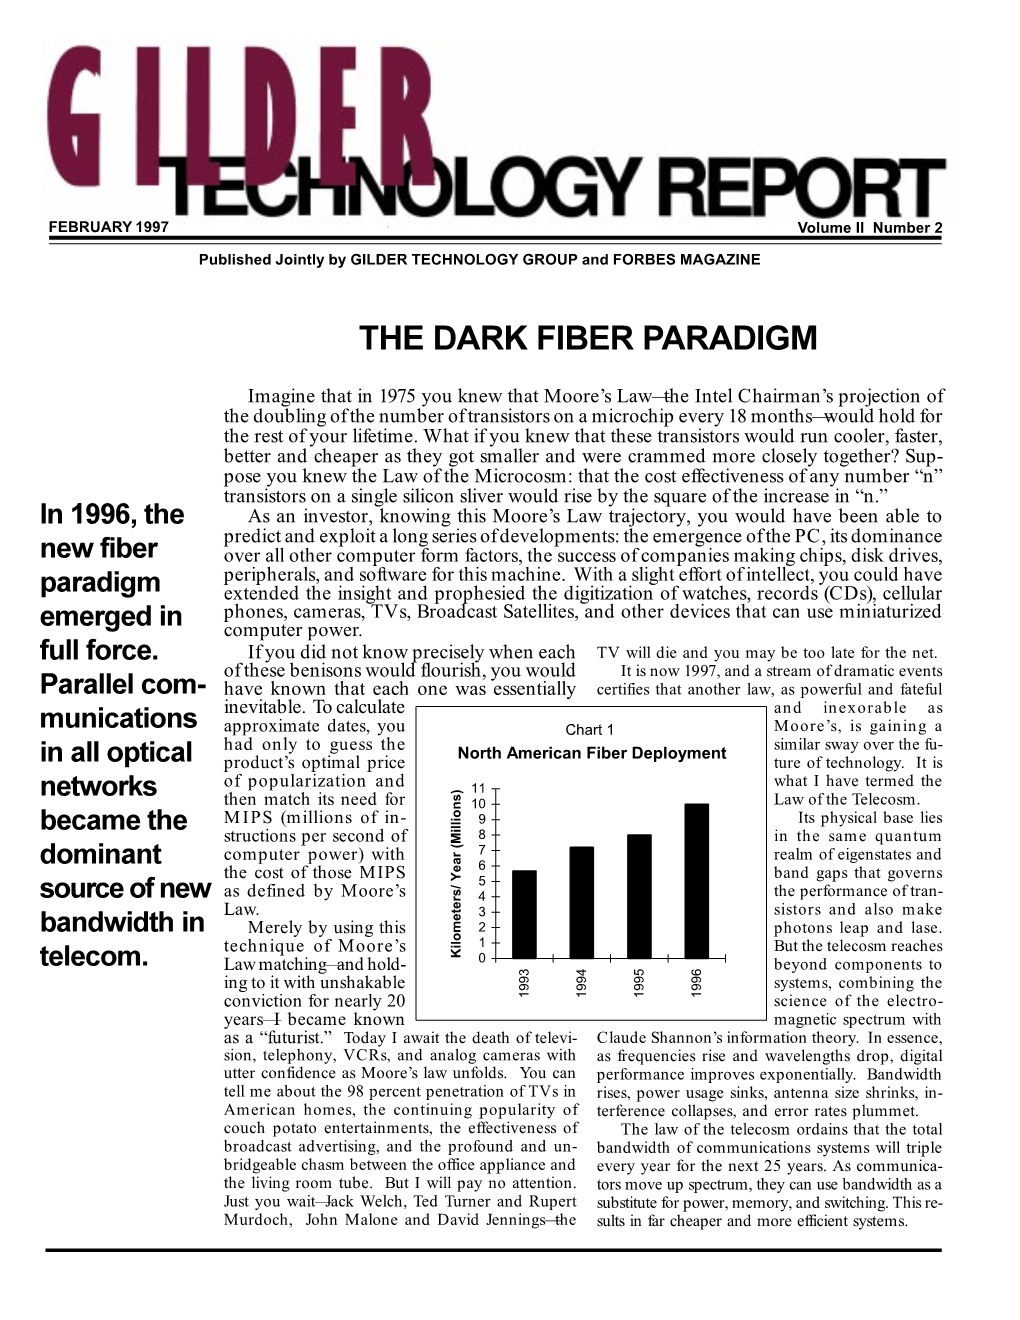 The Dark Fiber Paradigm